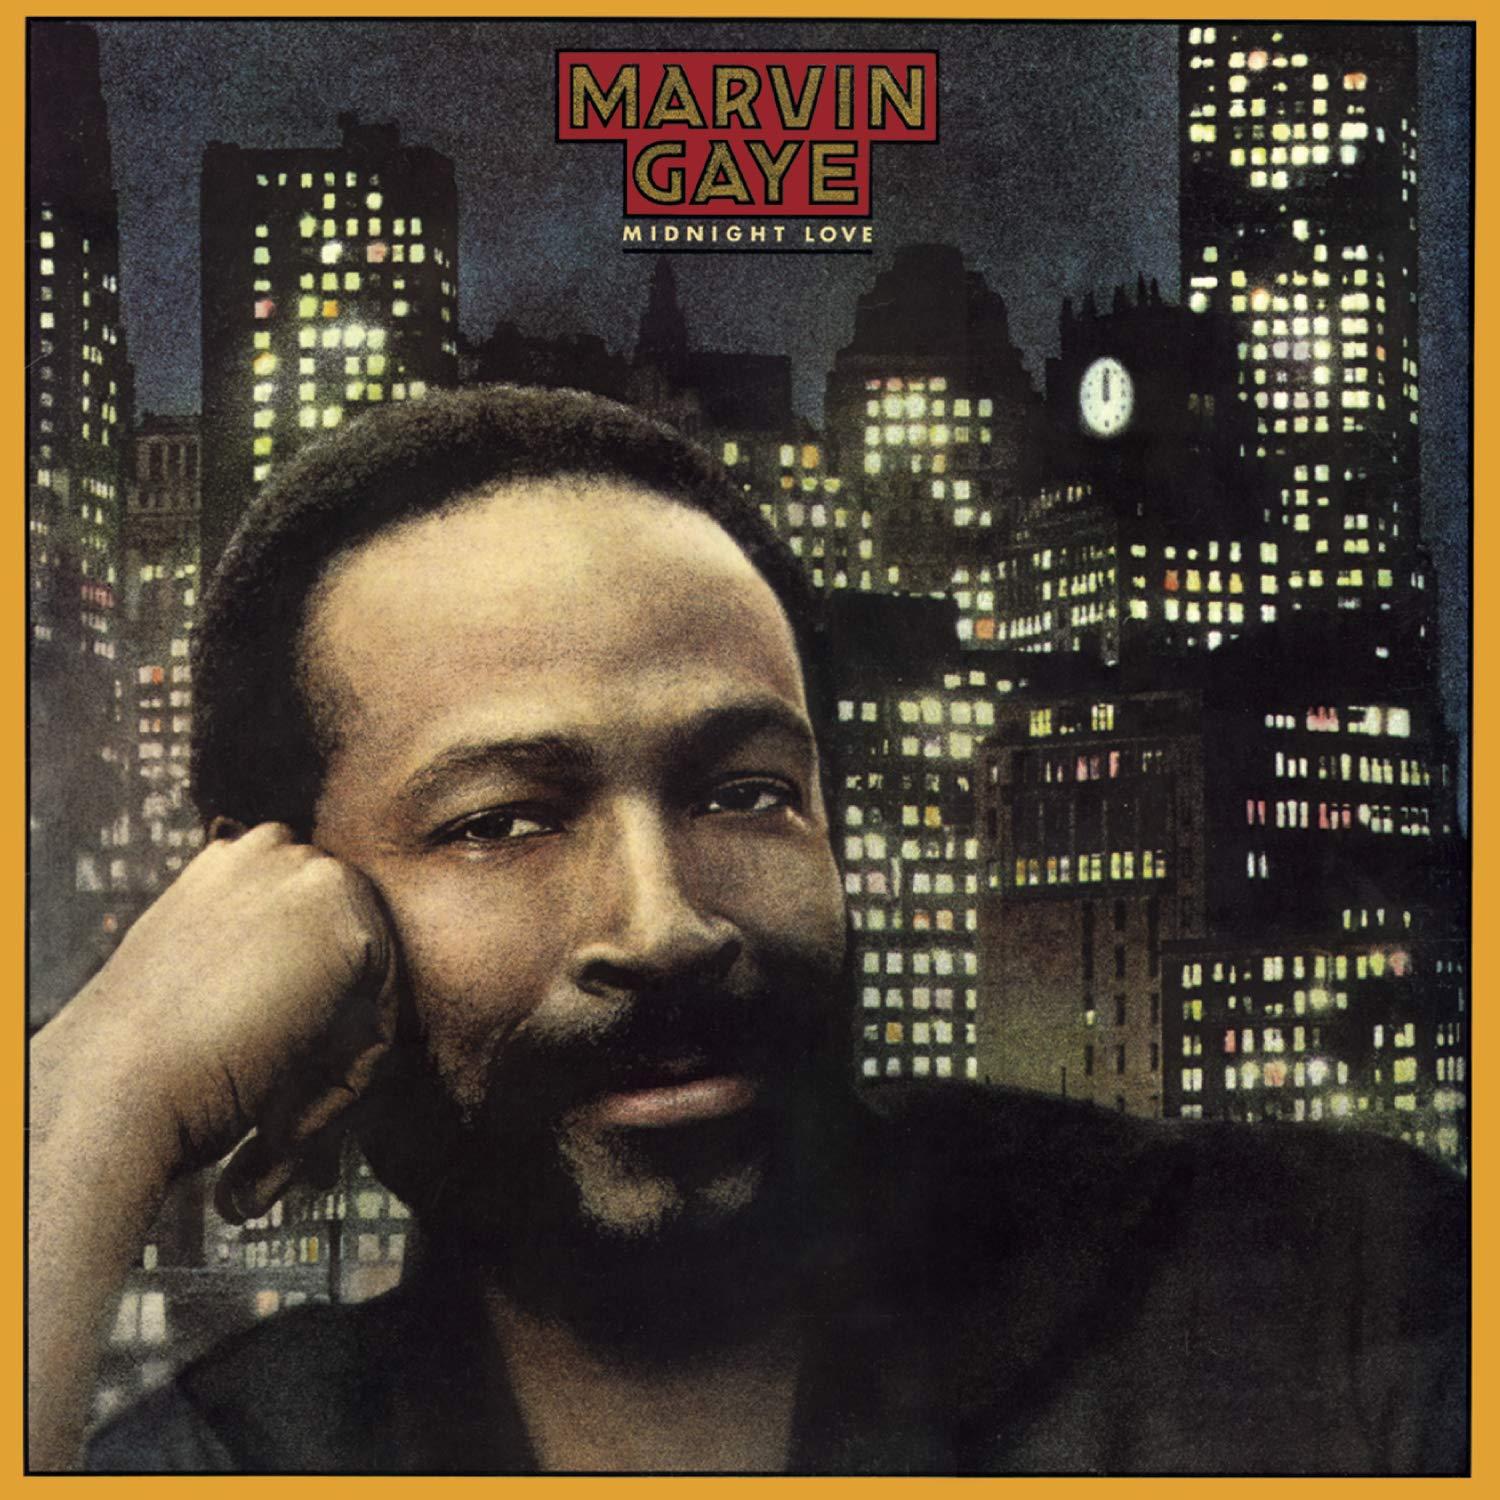 Marvin Gaye - Midnight Love (1982) LP